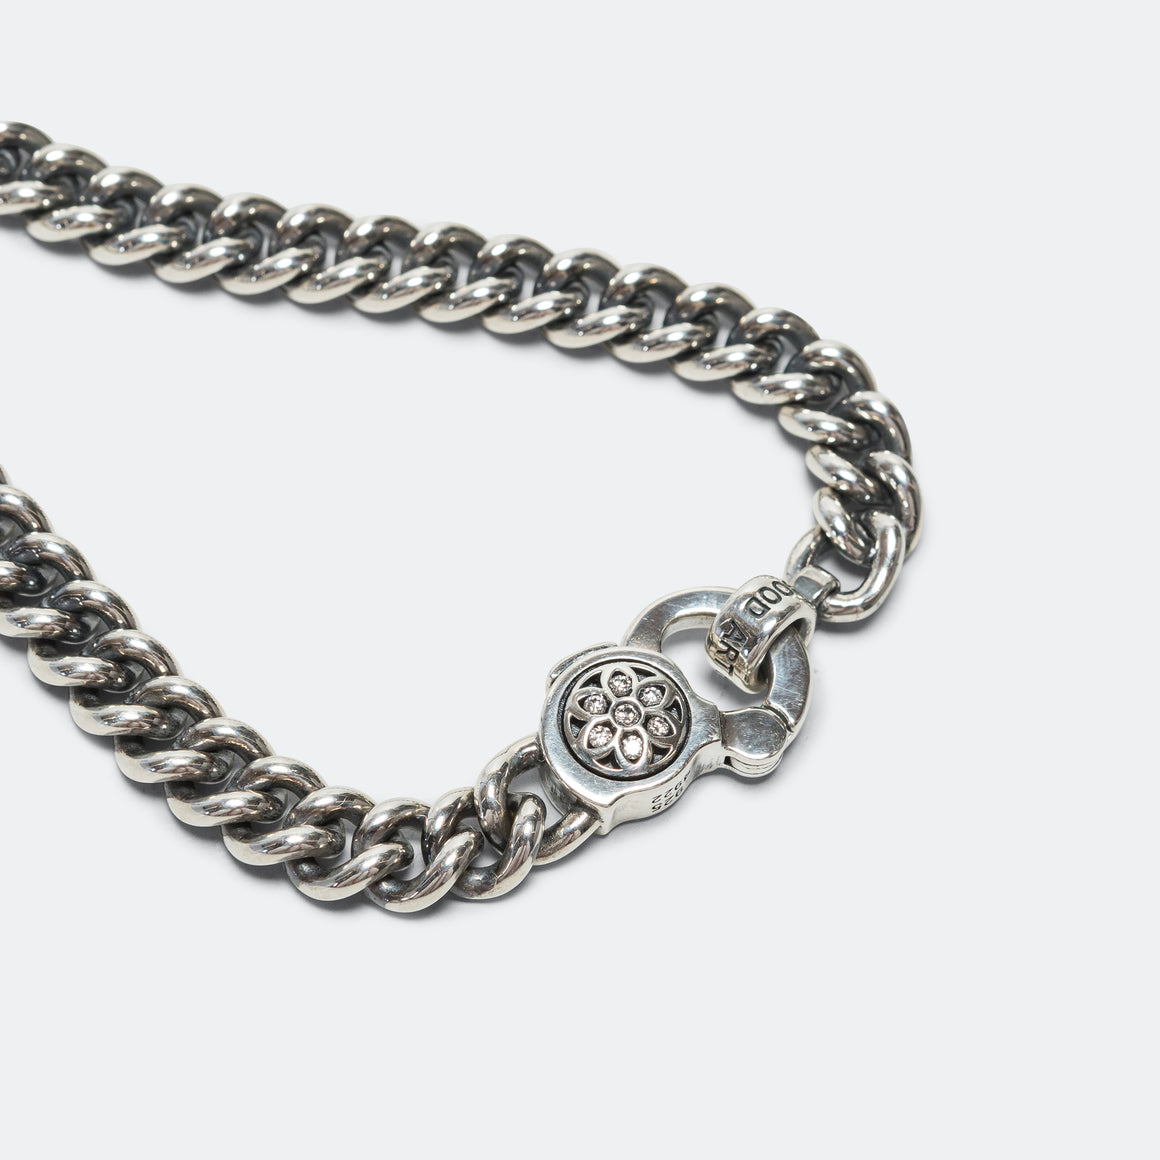 Curb Chain Bracelet w/ White Diamonds - A - 925 Silver